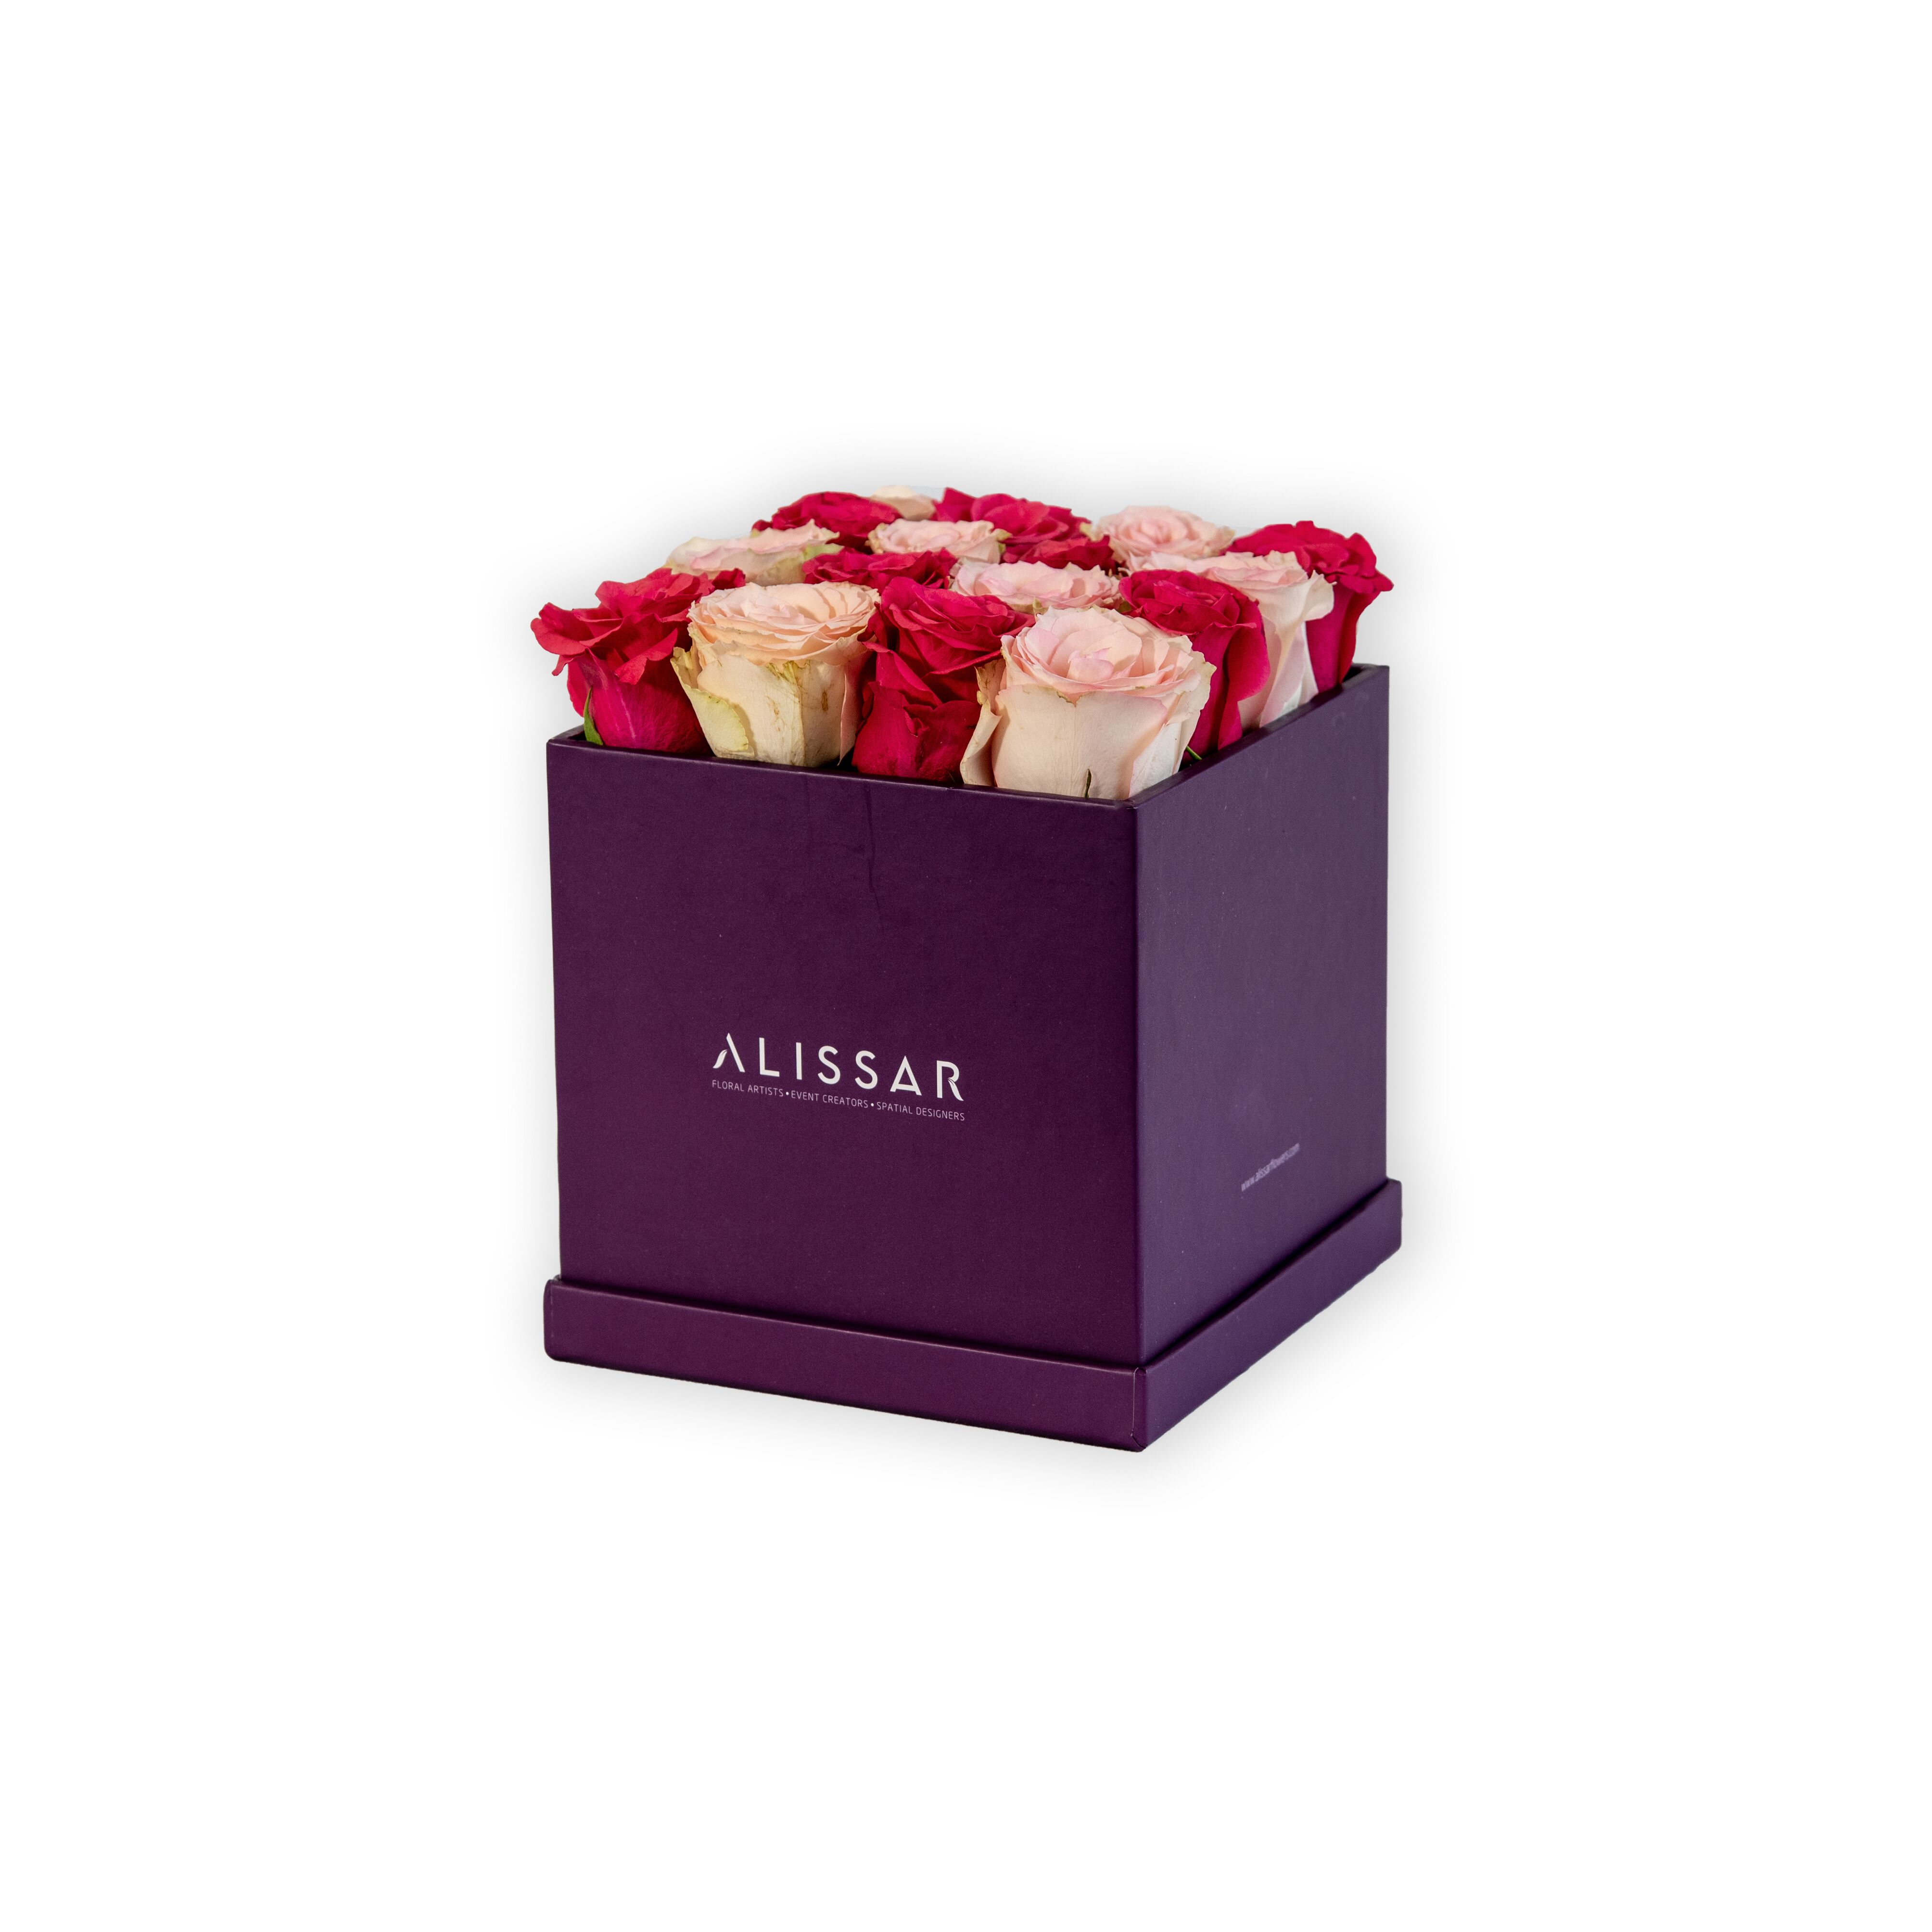 أزهار أليسار تقدم هدايا مثالية فاخرة بأسعار مناسبة خلال رمضان المبارك